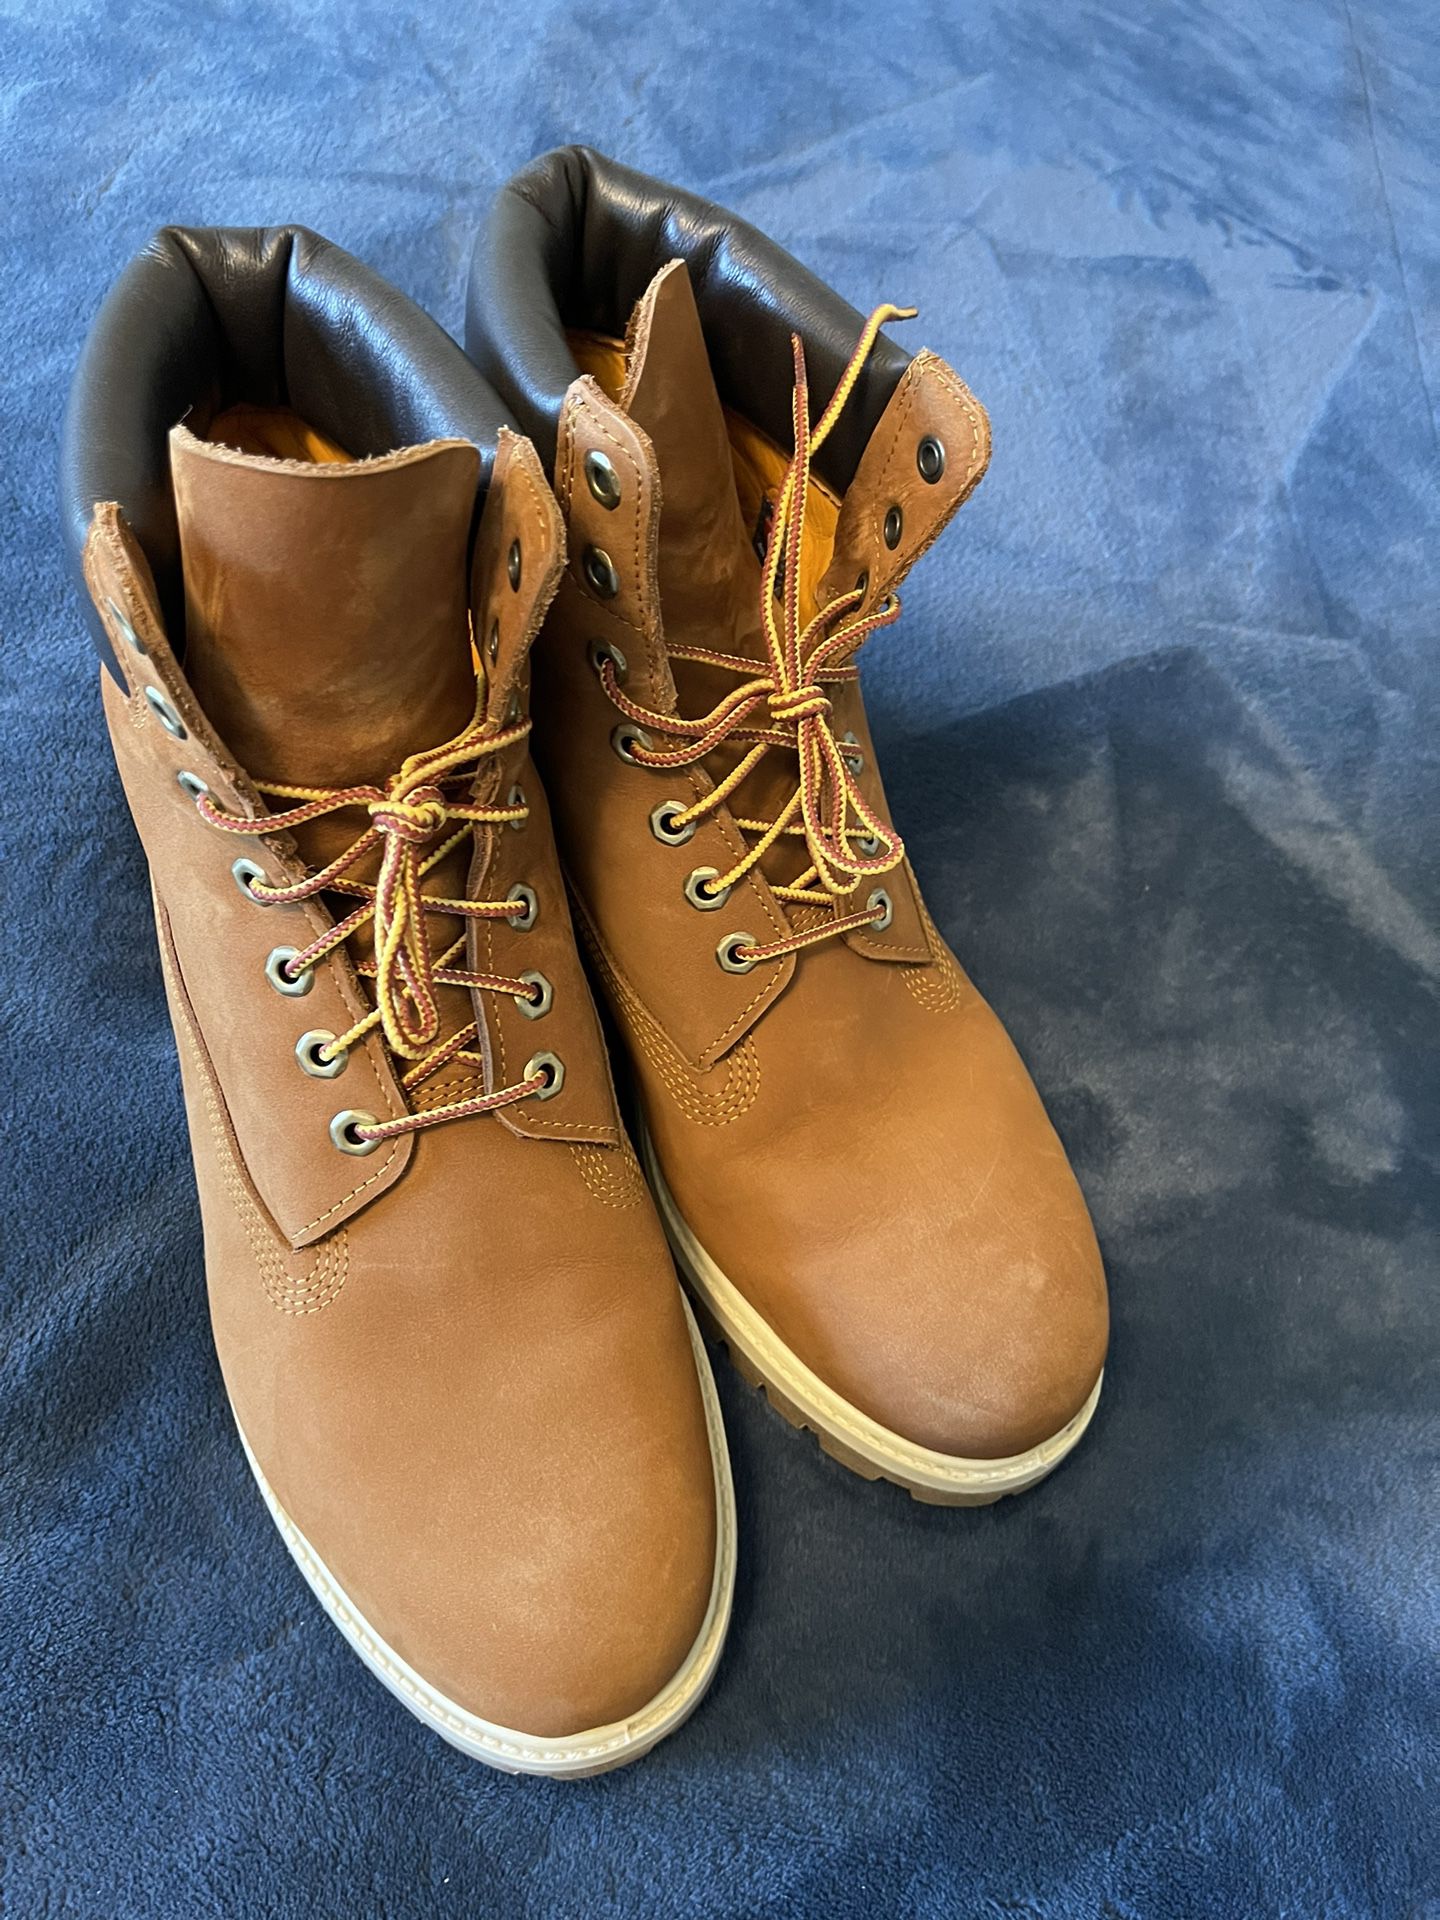 Timberland Premium Boots